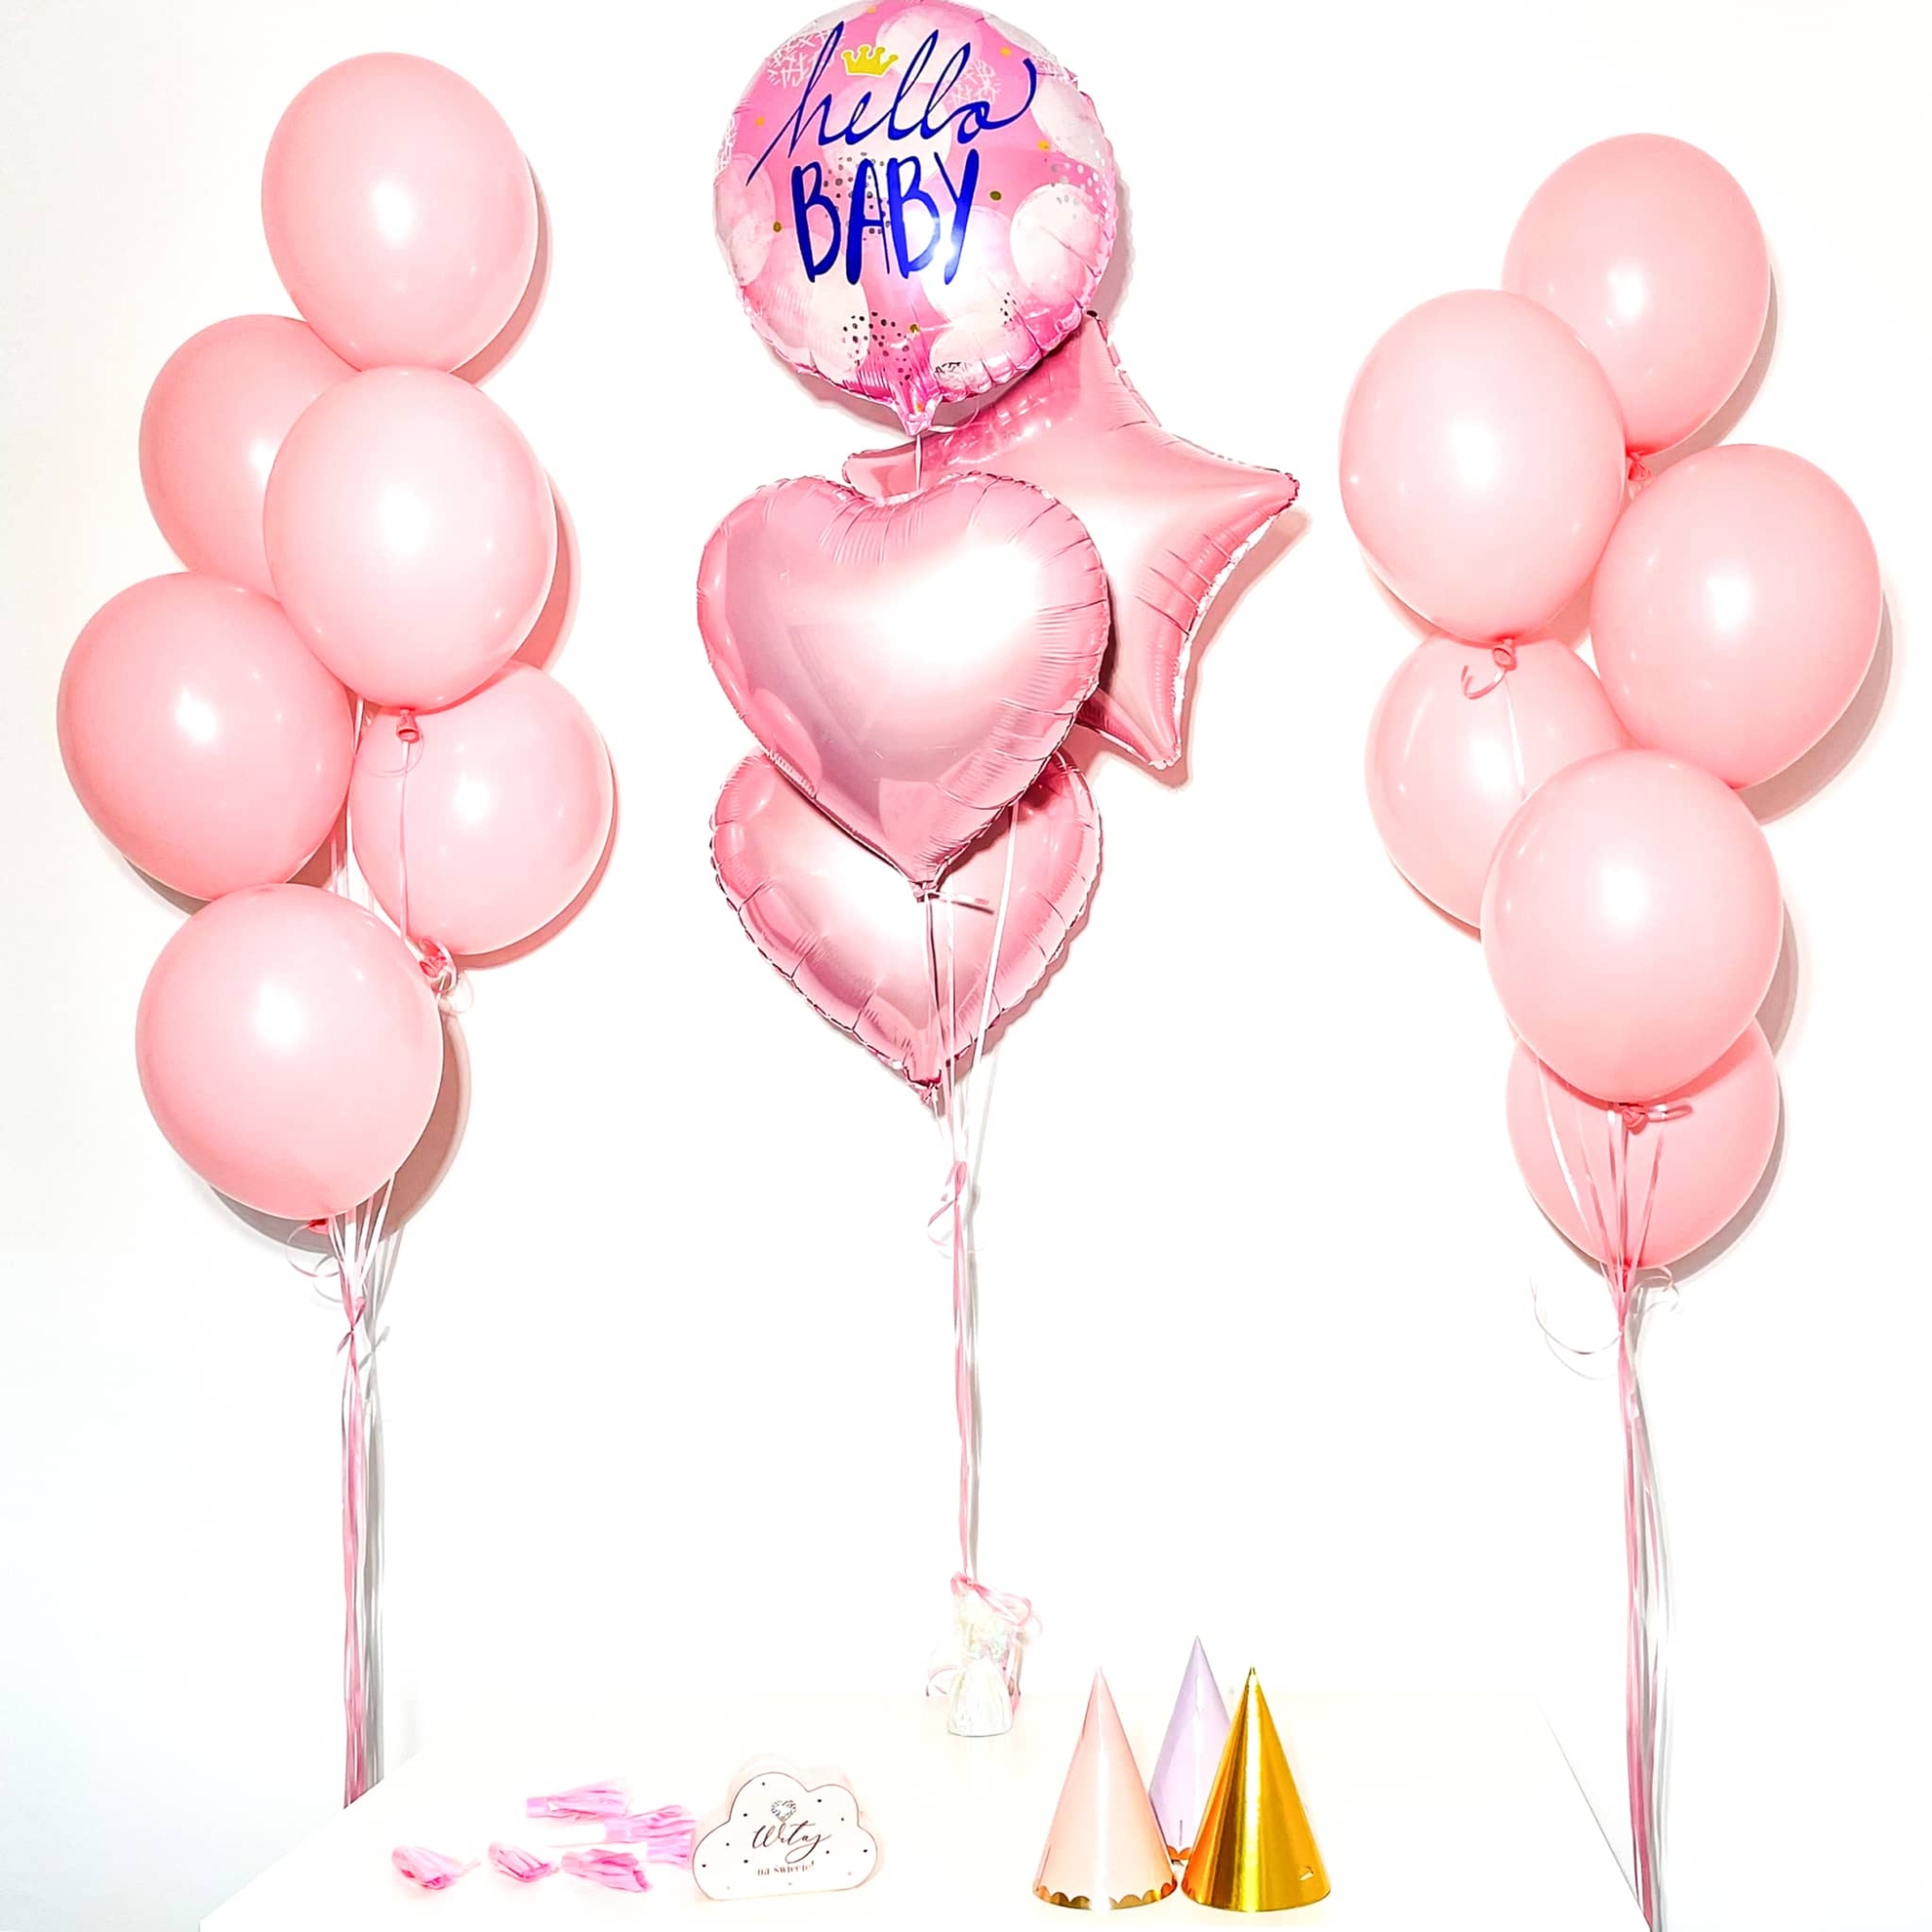 Bukiet balonowy: HELLO BABY GIRL2 Balony na Narodziny Szalony.pl - Sklep imprezowy 2